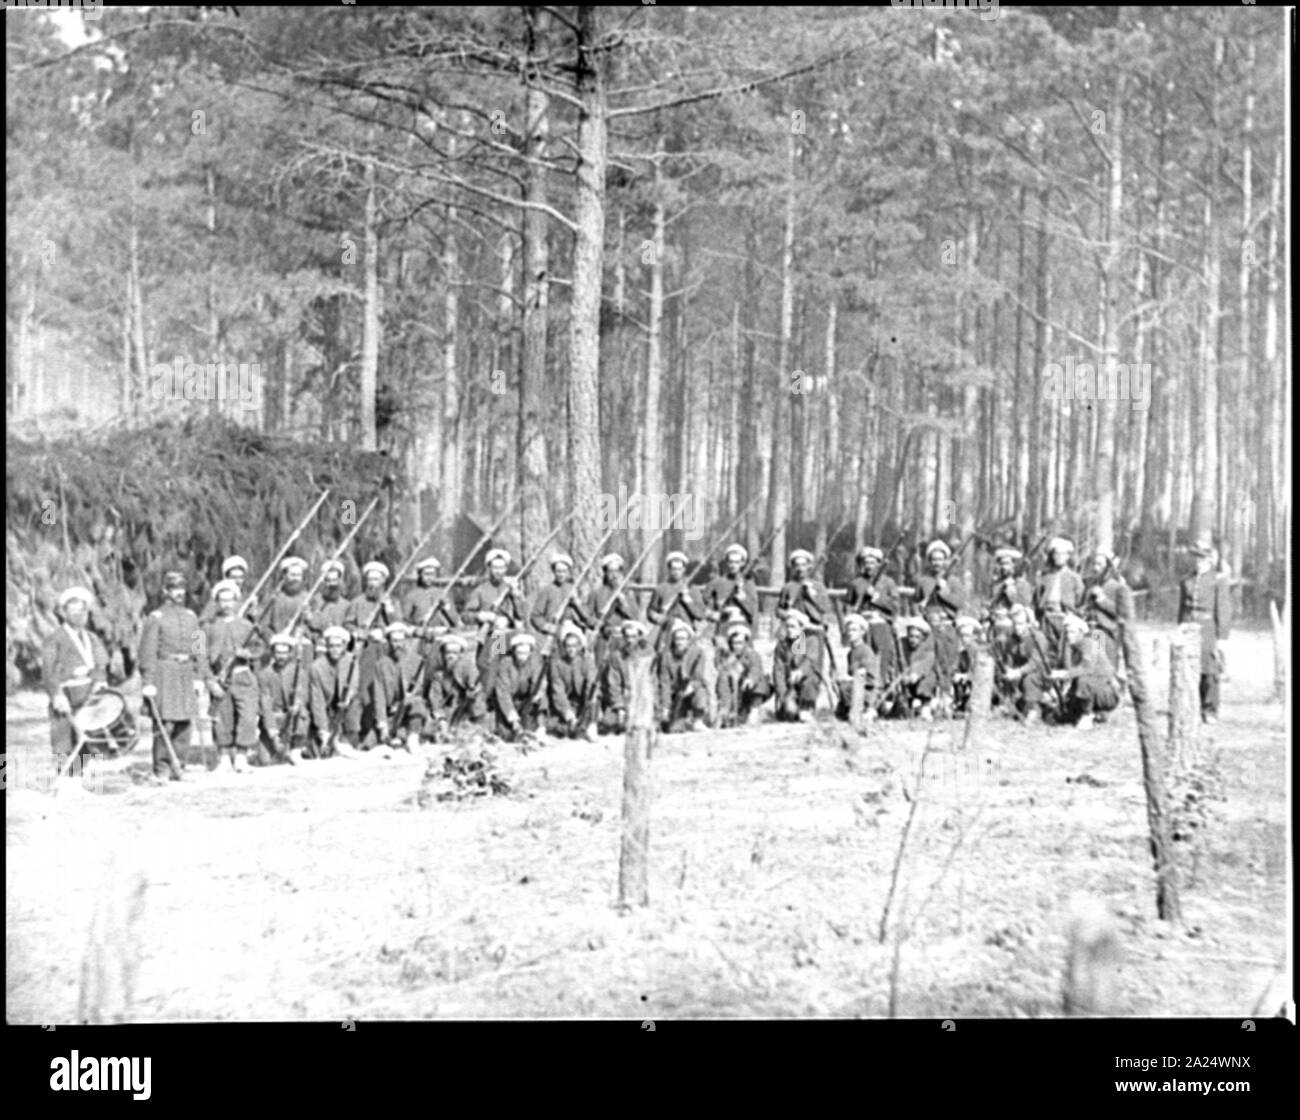 Petersburg, Va. Company F, 114th Pennsylvania Infantry (Zouaves) with fixed bayonets Stock Photo